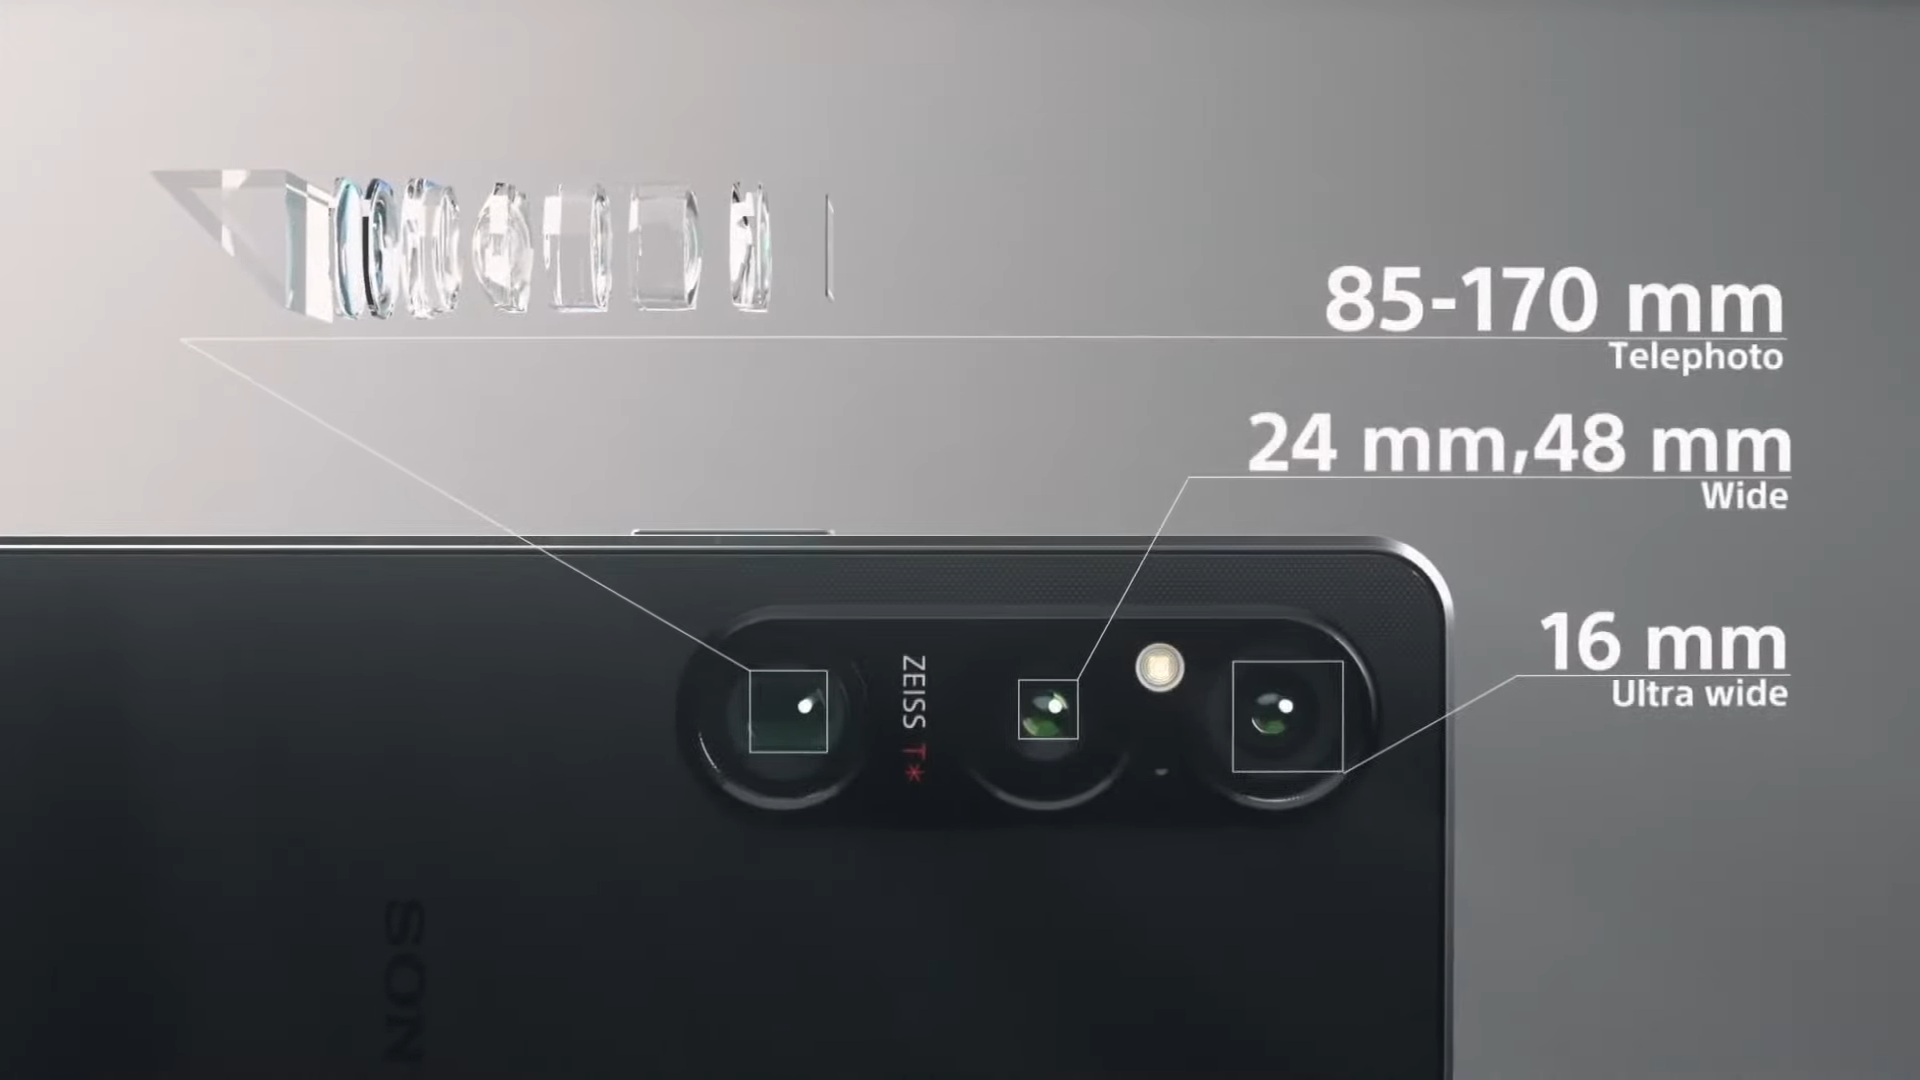 يعد هاتف Sony Xperia 1 VI رسميًا مزودًا بشاشة تشبه التلفاز وتقريب بصري 7.1x